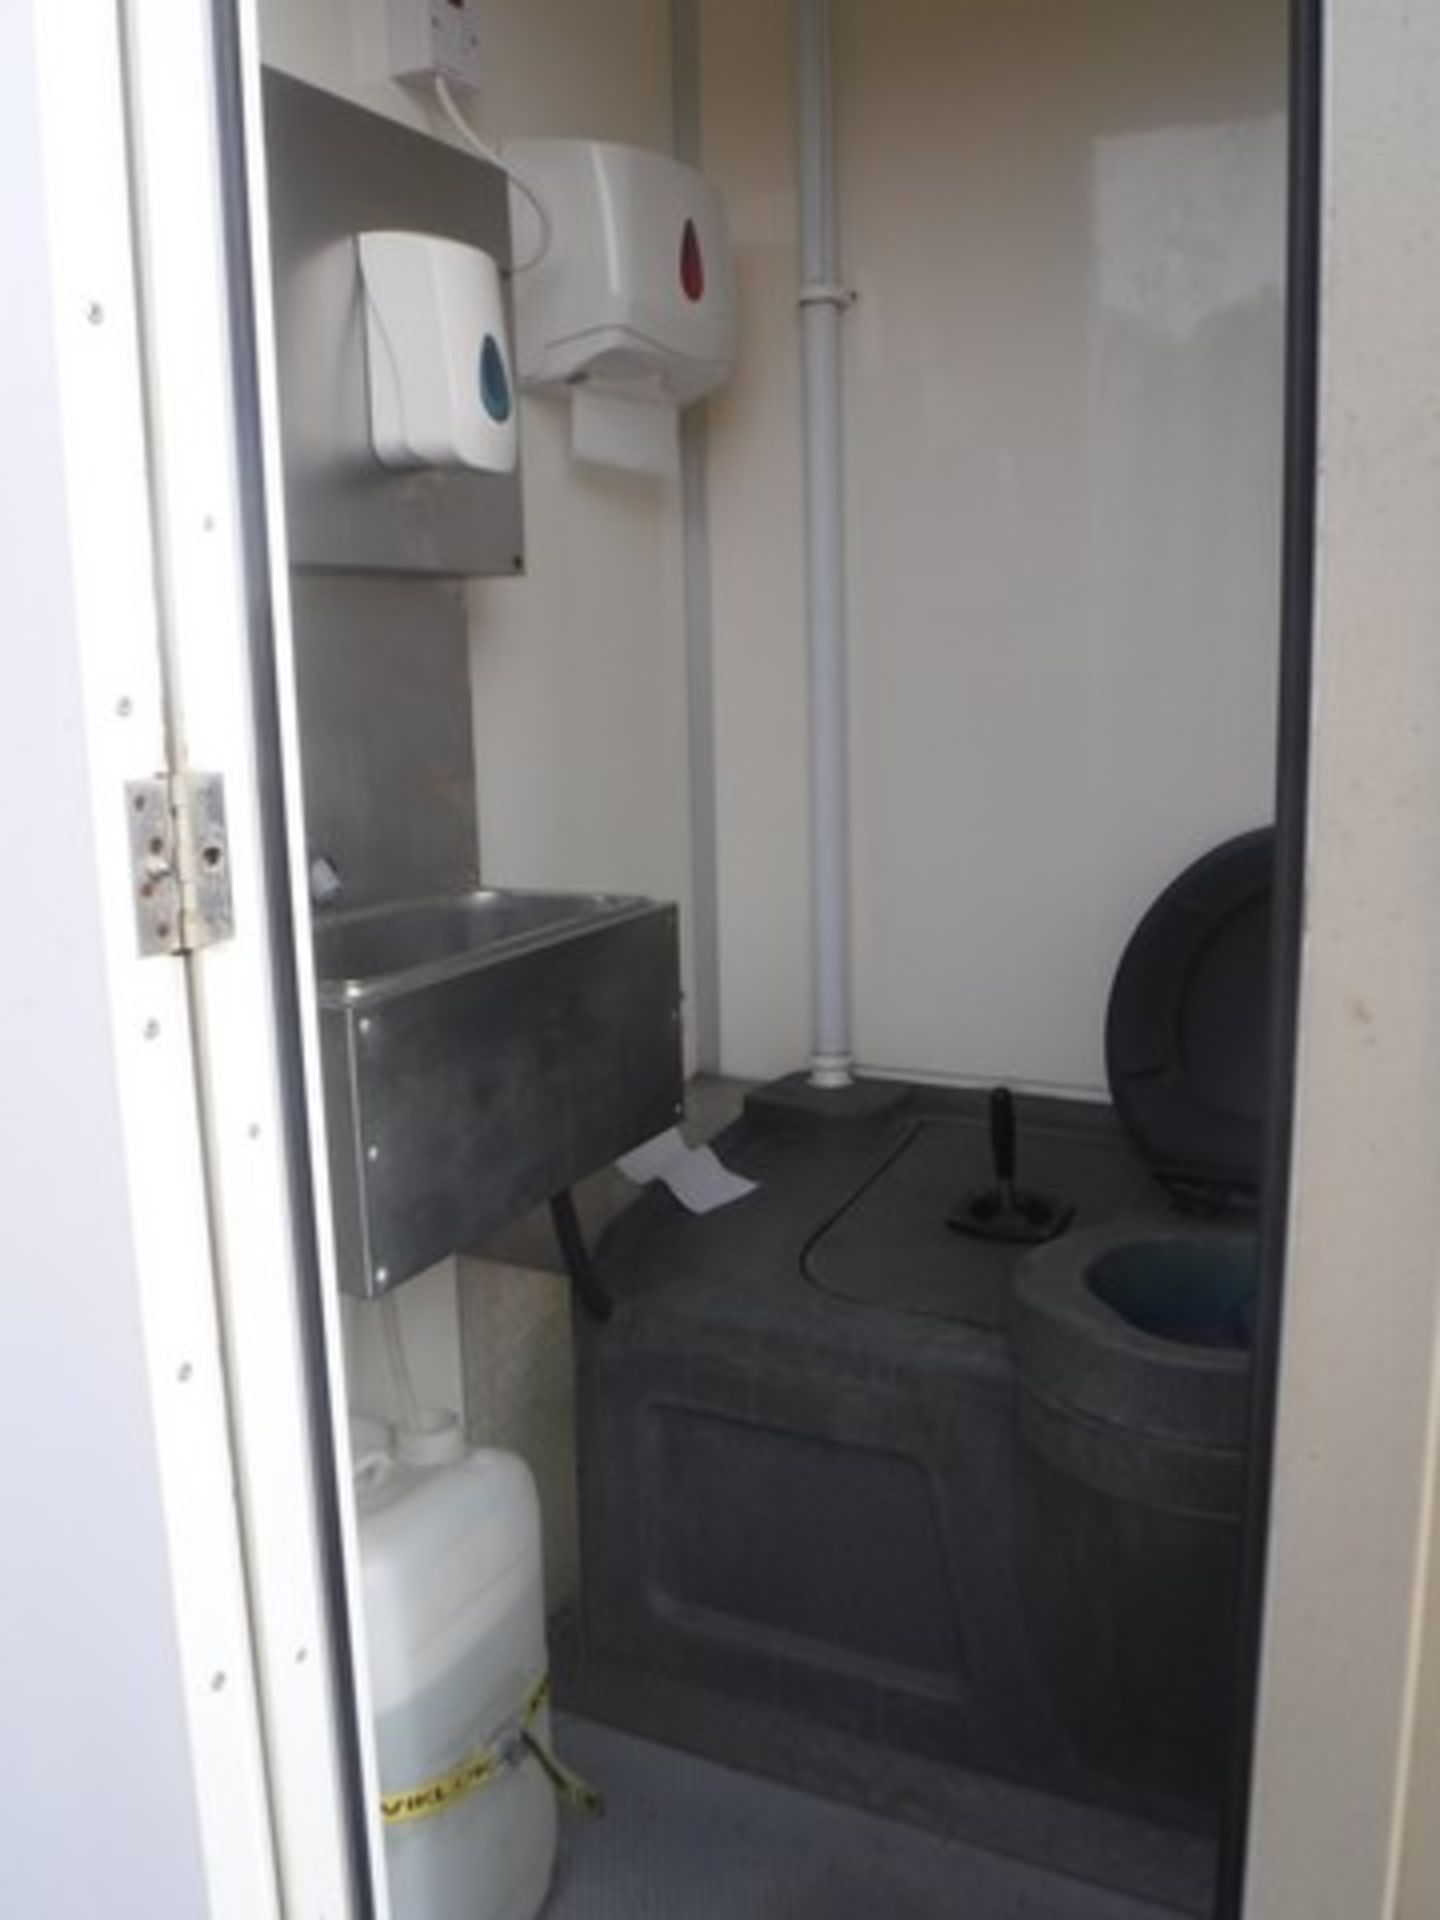 12 x 8 TOWABLE welfare cabin. Onboard generator, kitchen facilities, toilet & drying room. S/N SSM10 - Bild 3 aus 22